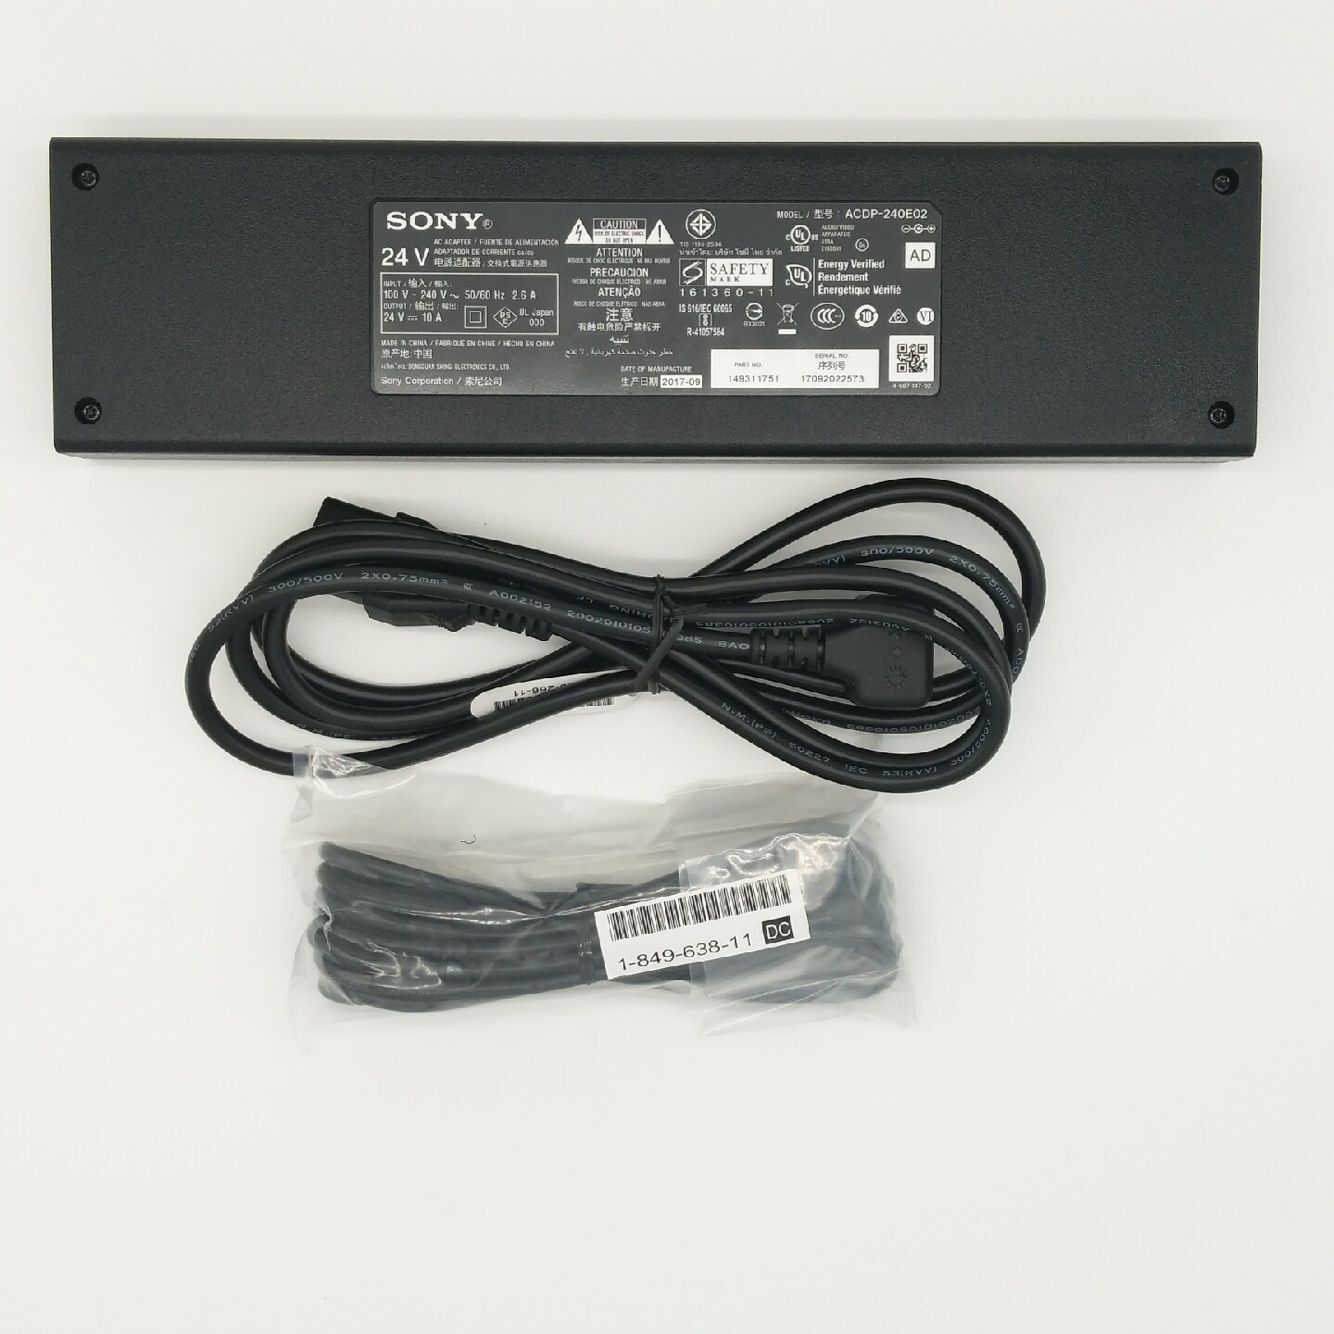 Original 240W Sony 1-493-117-51 acdp-240e02 AC Adaptor